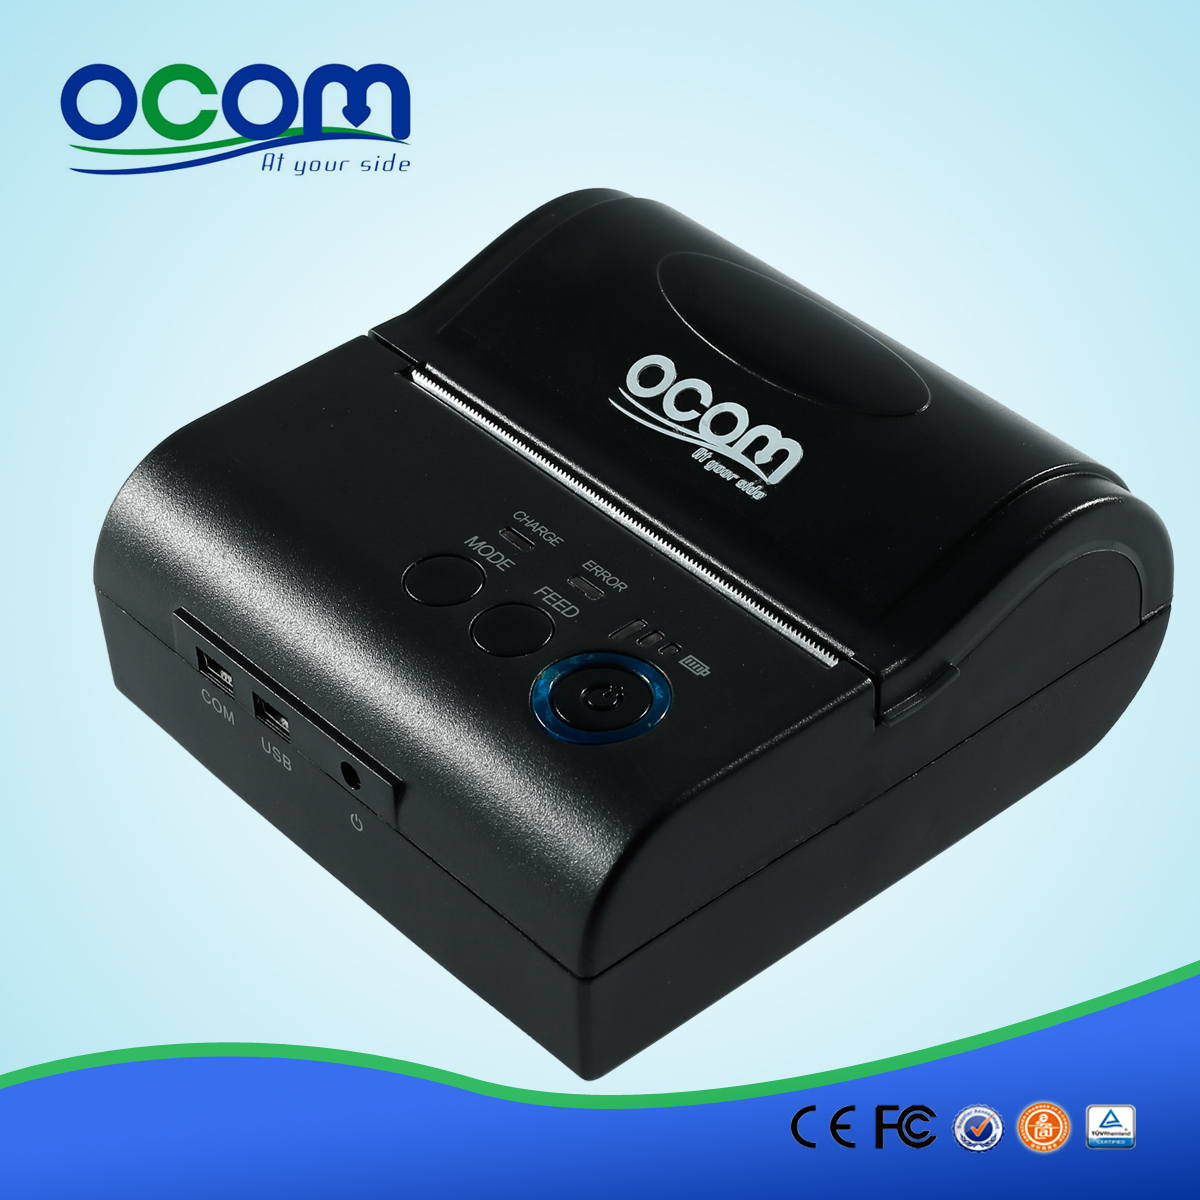 OCPP-M082: OCOM Gorący sprzedaje tanie 80mm drukarkę bluetooth, 80mm bluetooth drukarki